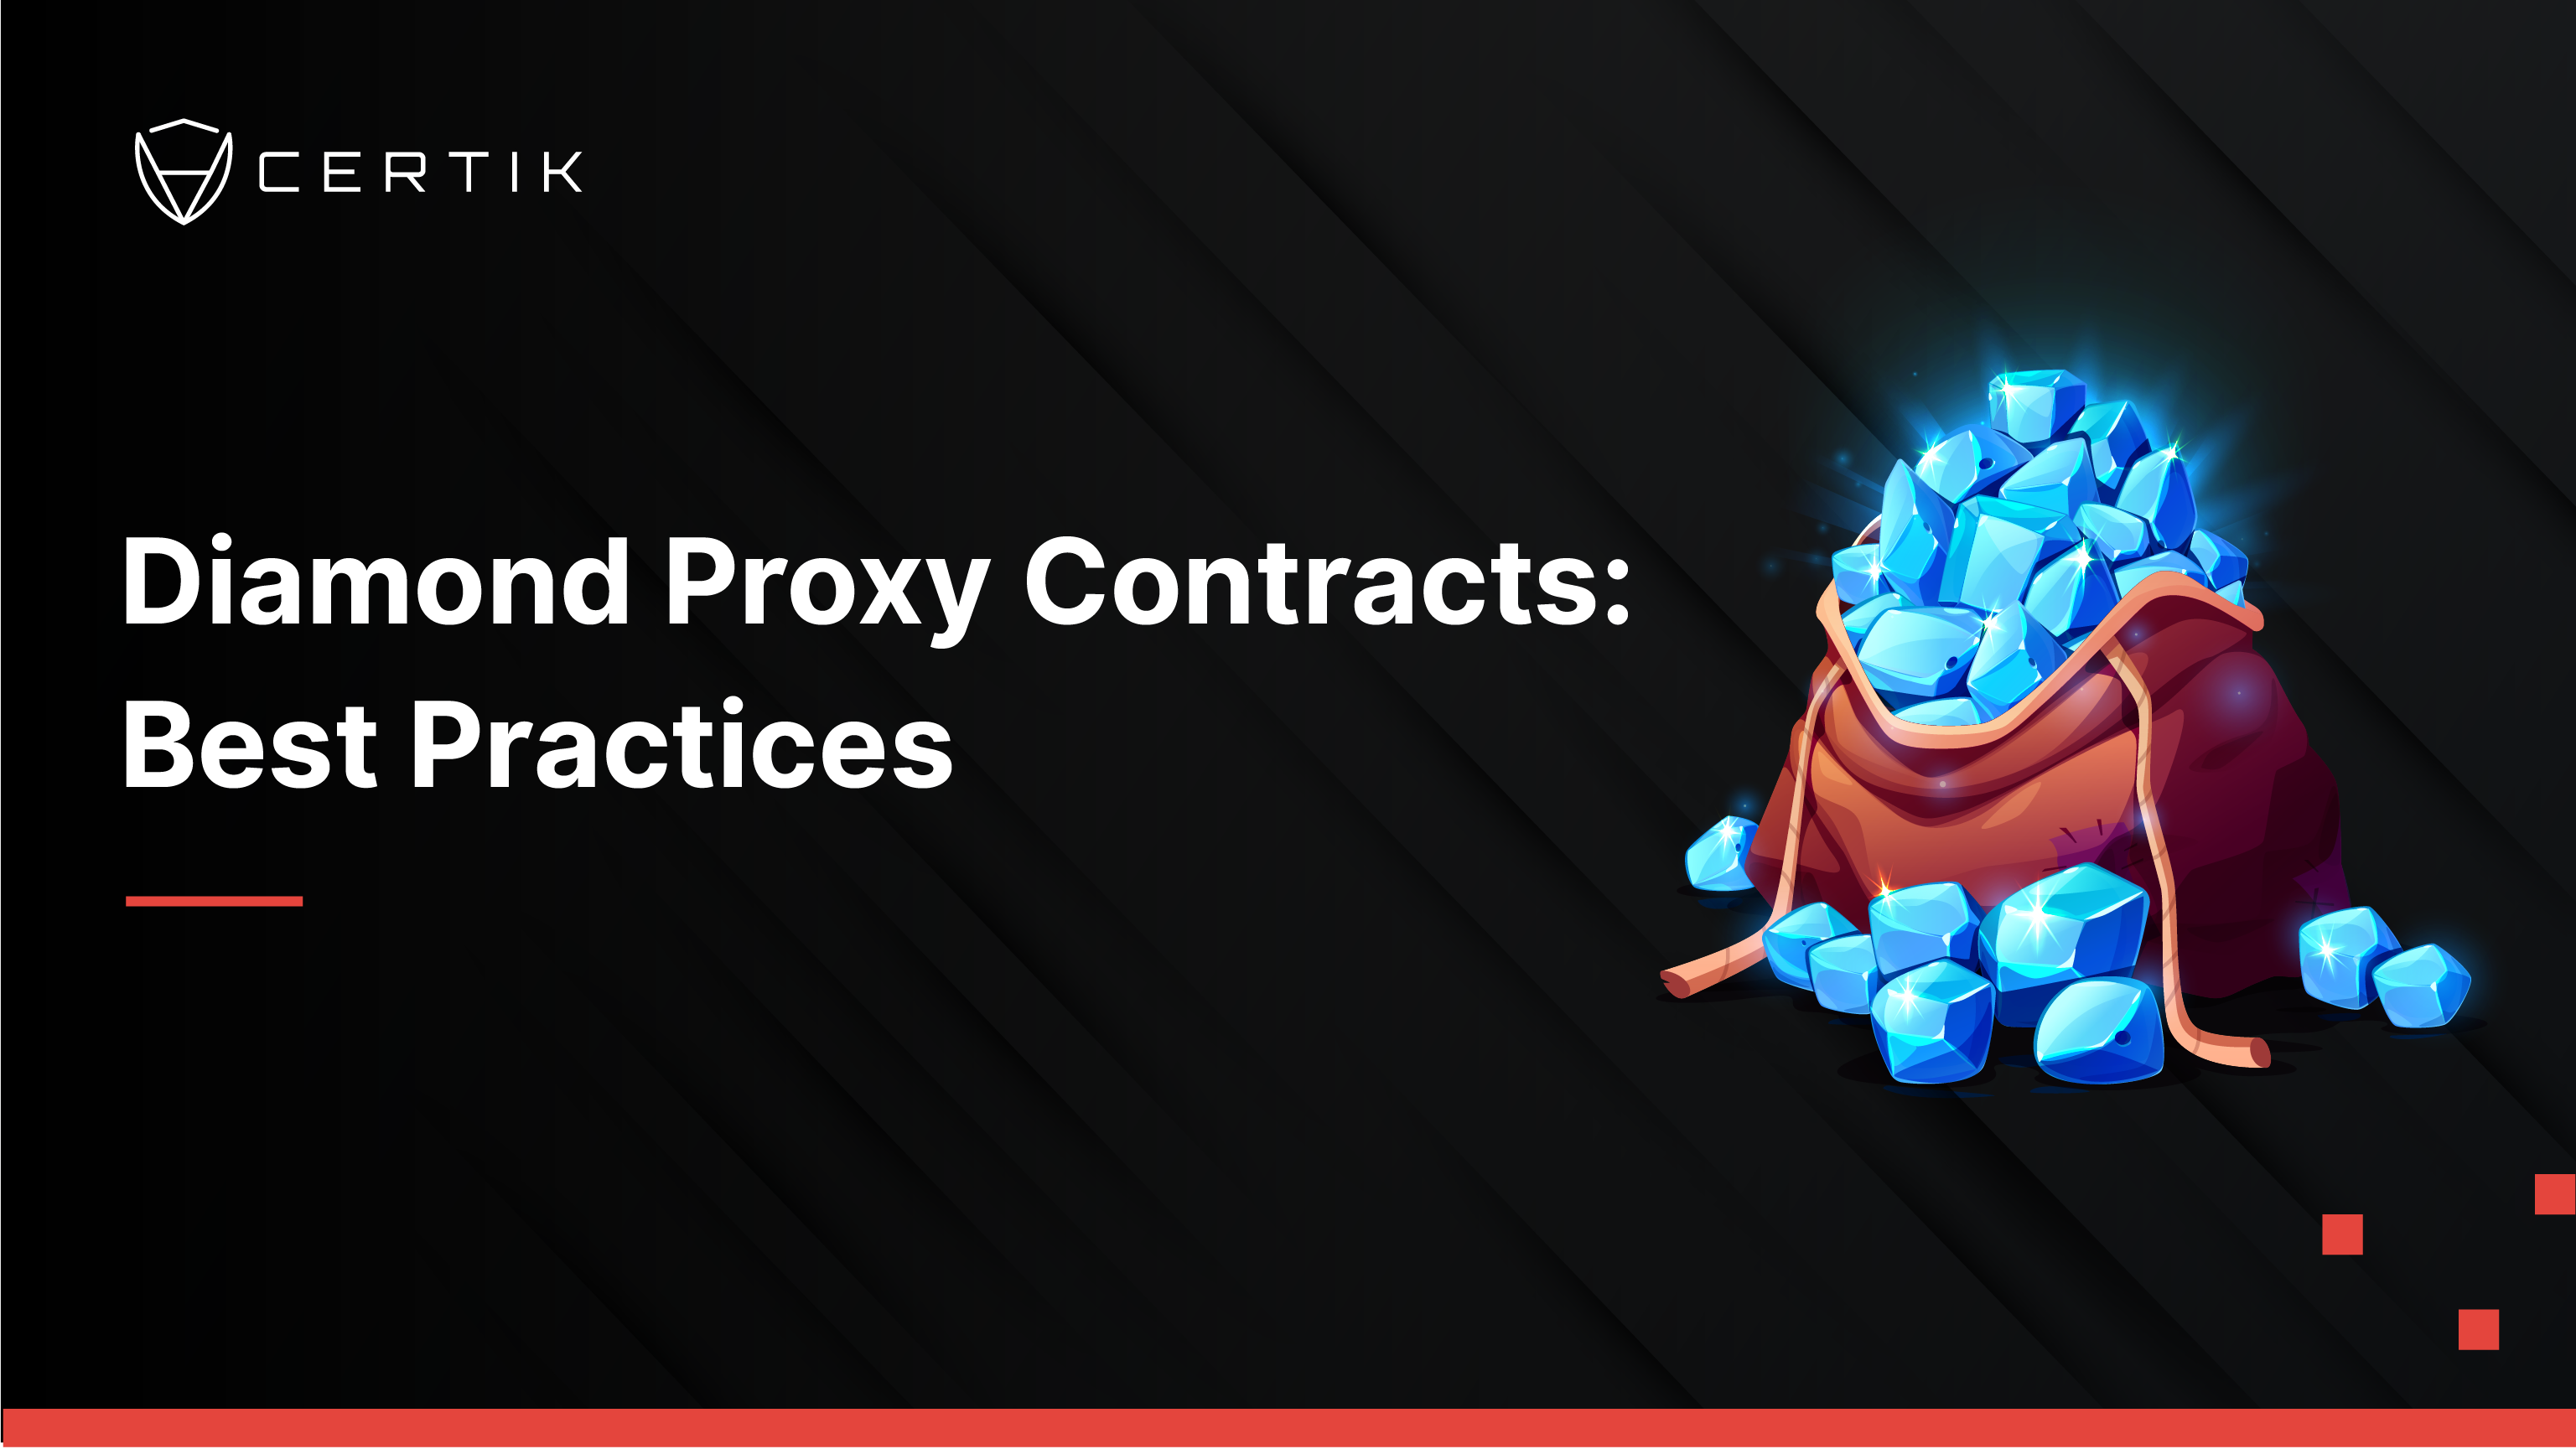 Diamond Proxy Contracts: Best Practices